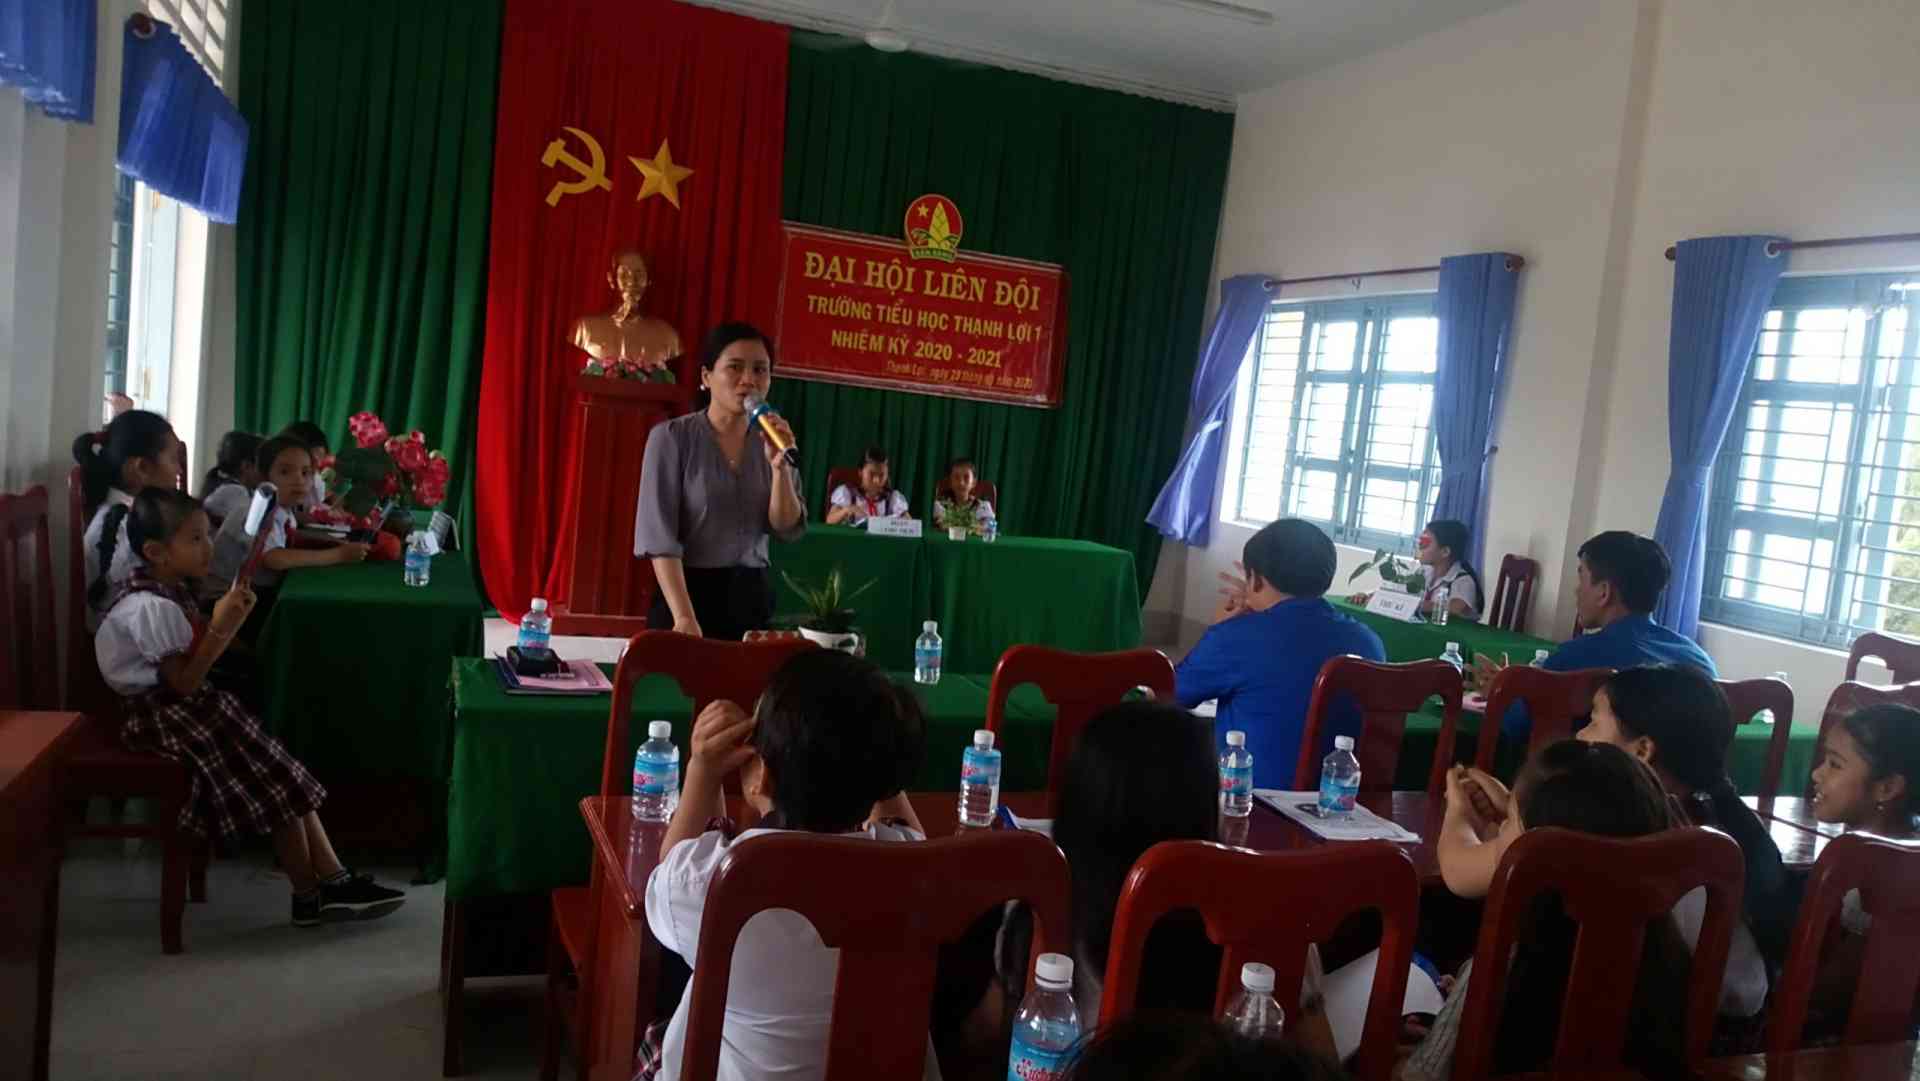 Cô Nguyễn Thị Mỹ Hạnh - Phó hiệu trưởng nhà trường phát biểu nhắc nhở đóng góp để Liên đội hoàn thành nhiệm vụ.